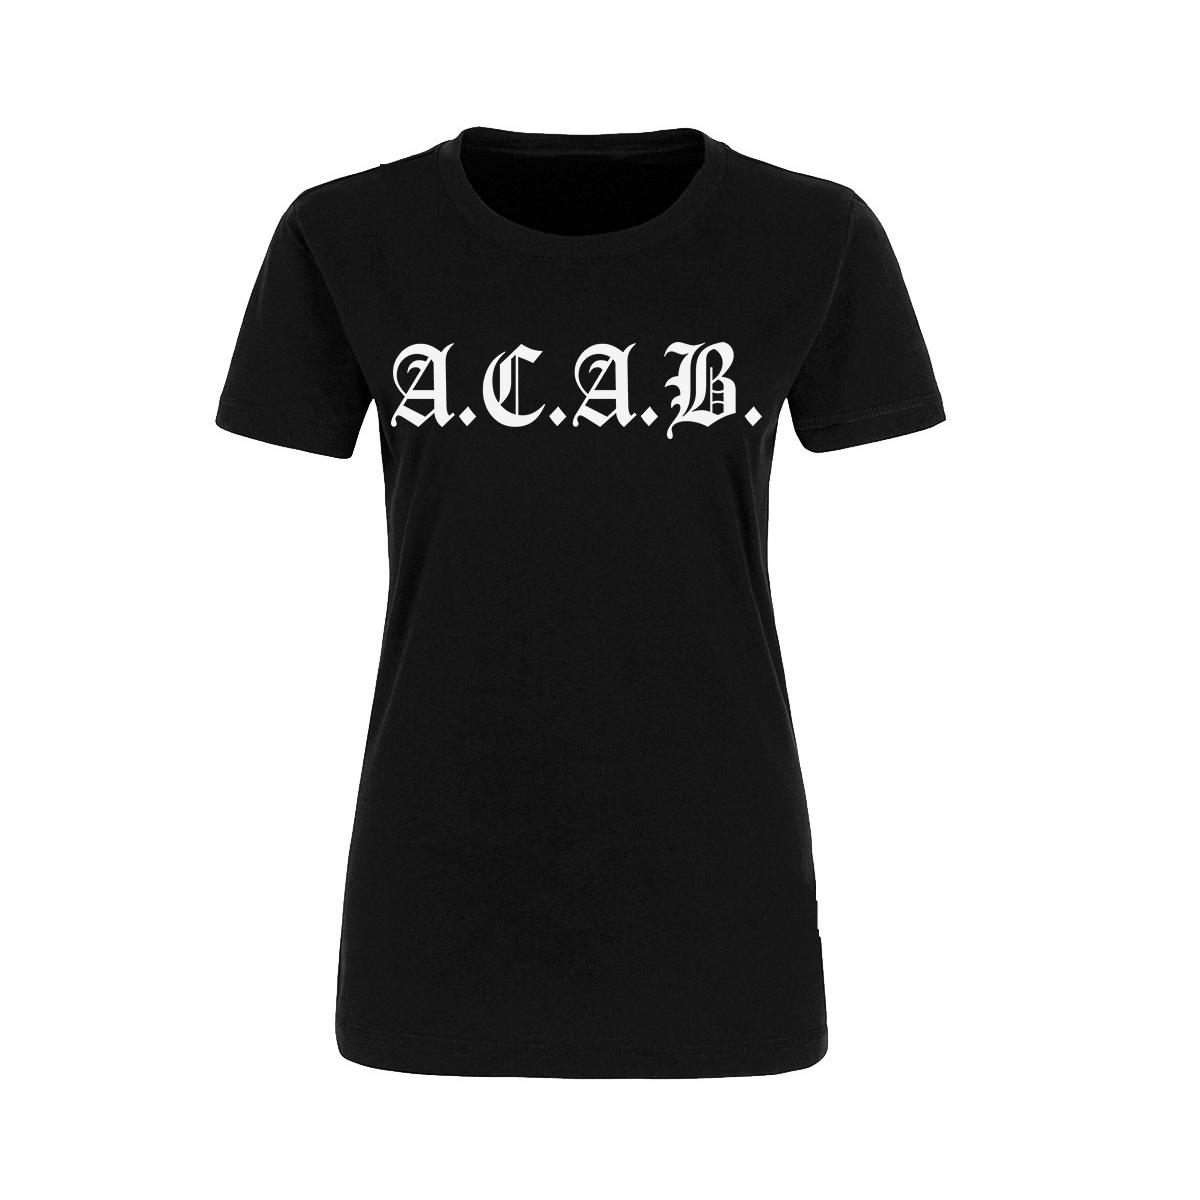 ACAB - Old School - Frauen Shirt - schwarz